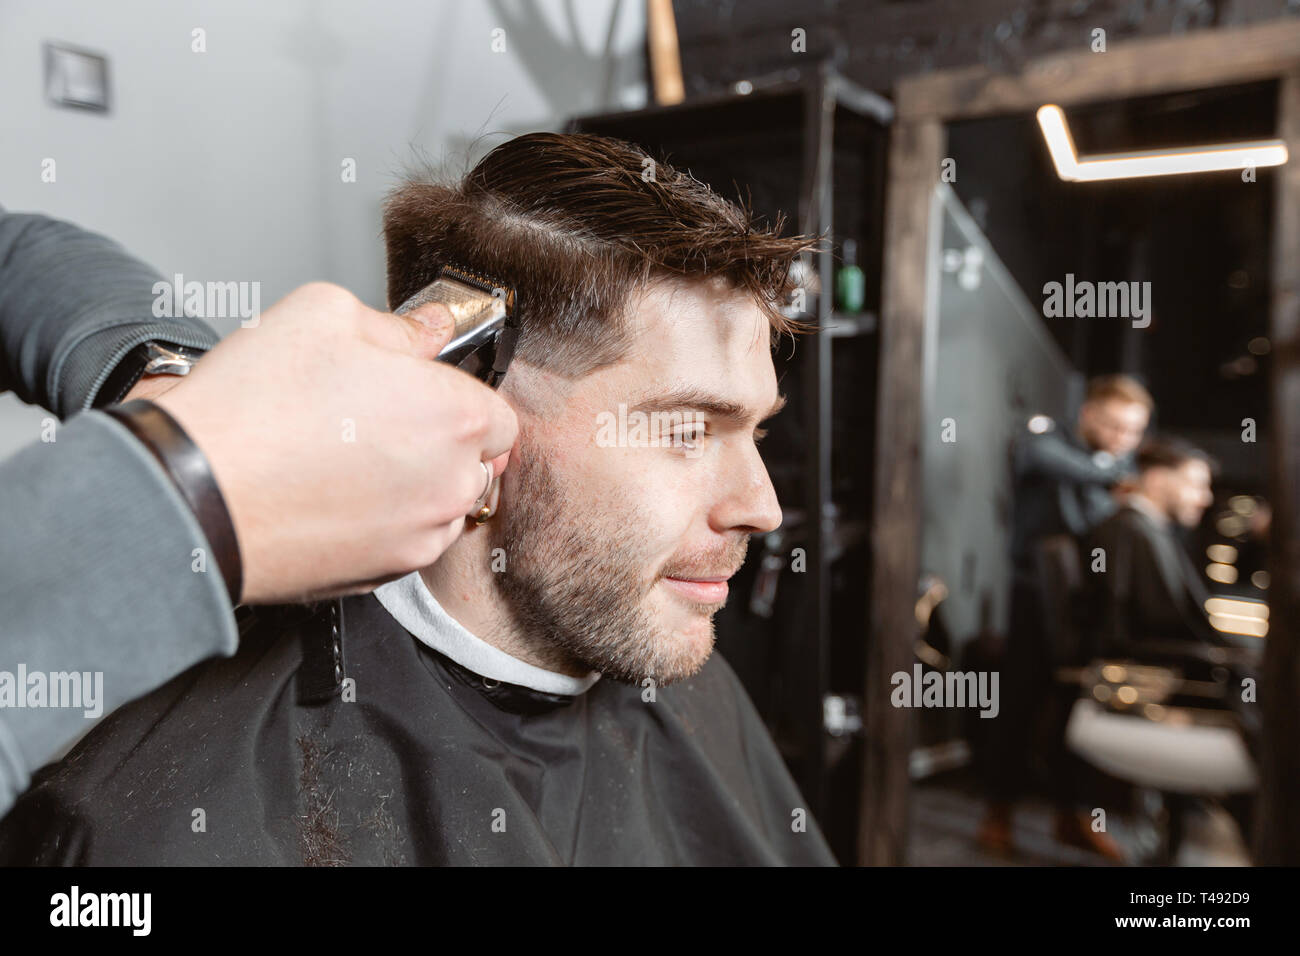 machine cutting hair style